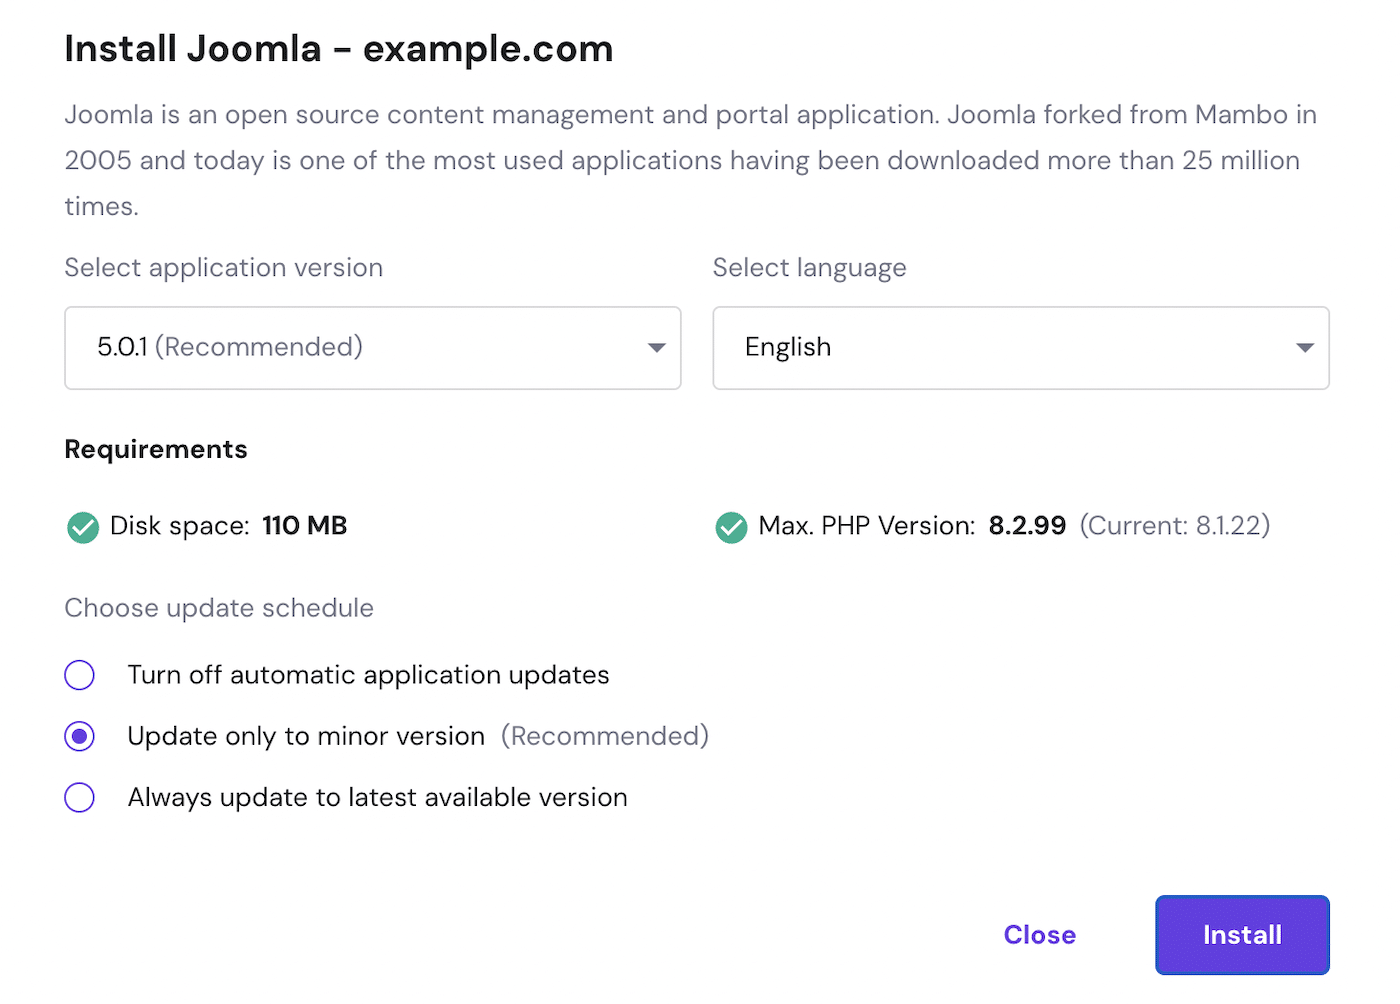 Install Joomla 